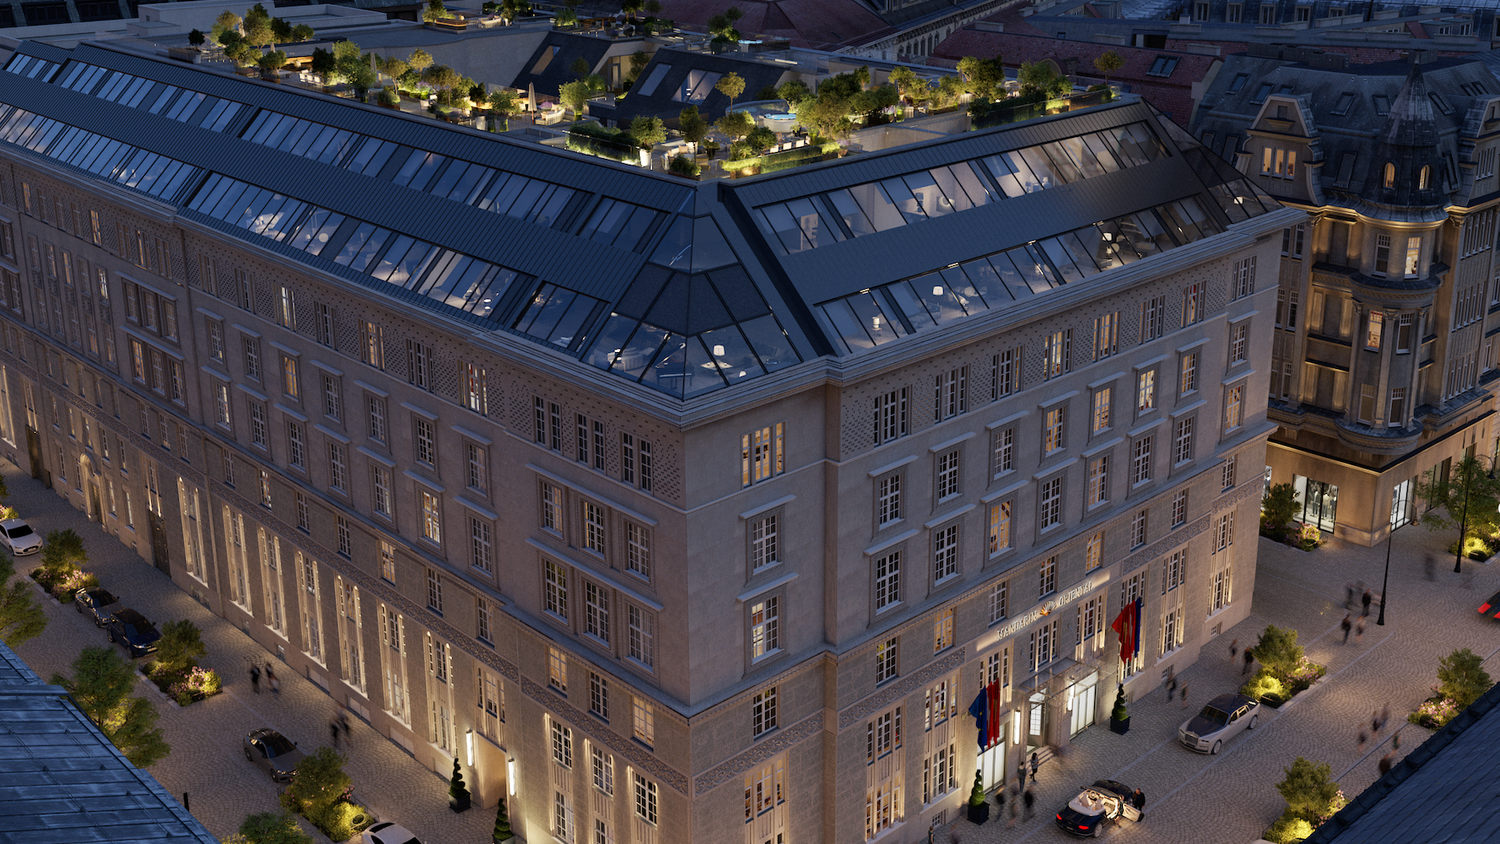 Das geplante Luxushotel "Mandarin Oriental": Links die Zedlitzgasse, die den Ring mit dem Stephansplatz verbindet. Der Haupteingang des Hotels mit seinen 138 Zimmern und Suiten ist an der Adresse Riemergasse 7 (Bildmitte). Die obersten zwei Stockwerke samt Dachterrassen sind für die insgesamt 25 privaten Residenzen reserviert.